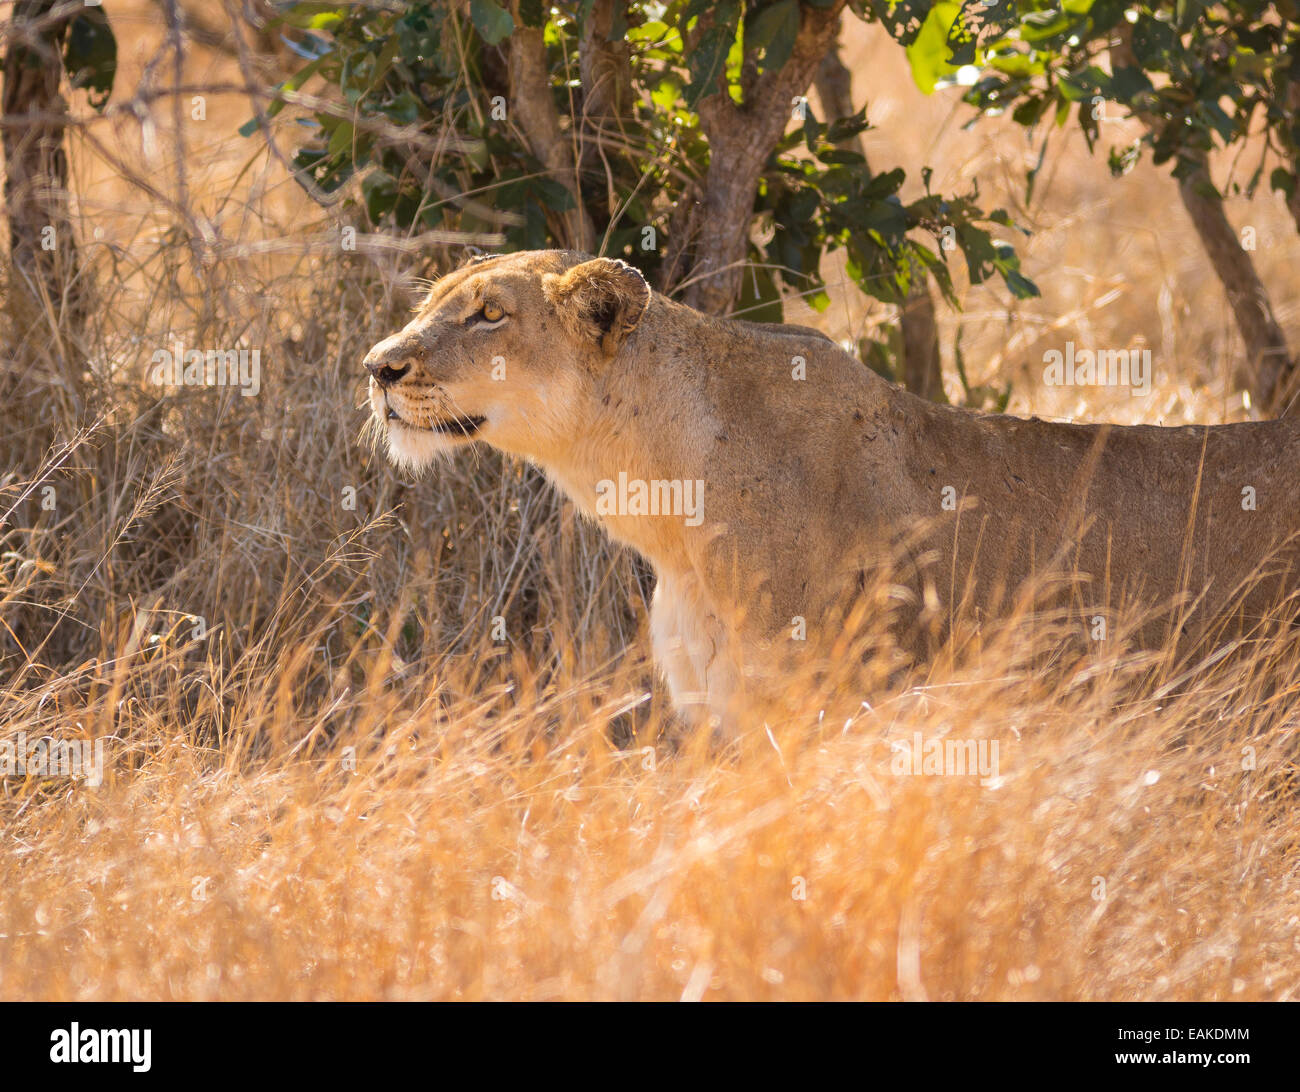 Parco Nazionale di Kruger, SUD AFRICA - Leonessa stalking preda in erba alta durante la caccia. Foto Stock